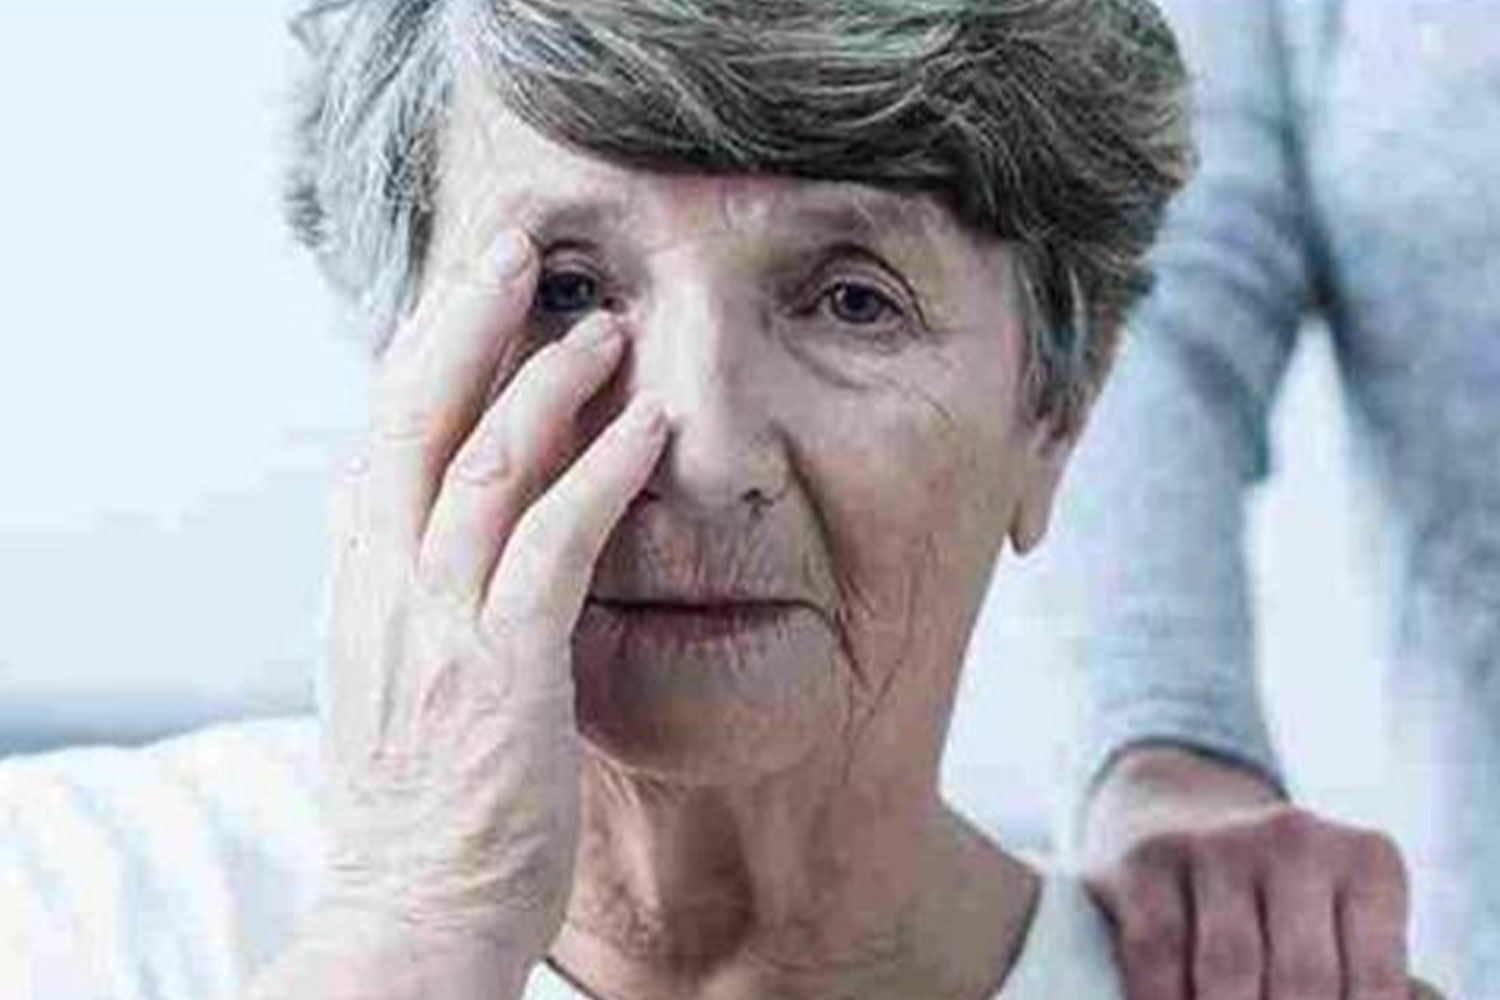 Unutkanlığın Nedeni Alzheimer mı, Yaşlılık mı?